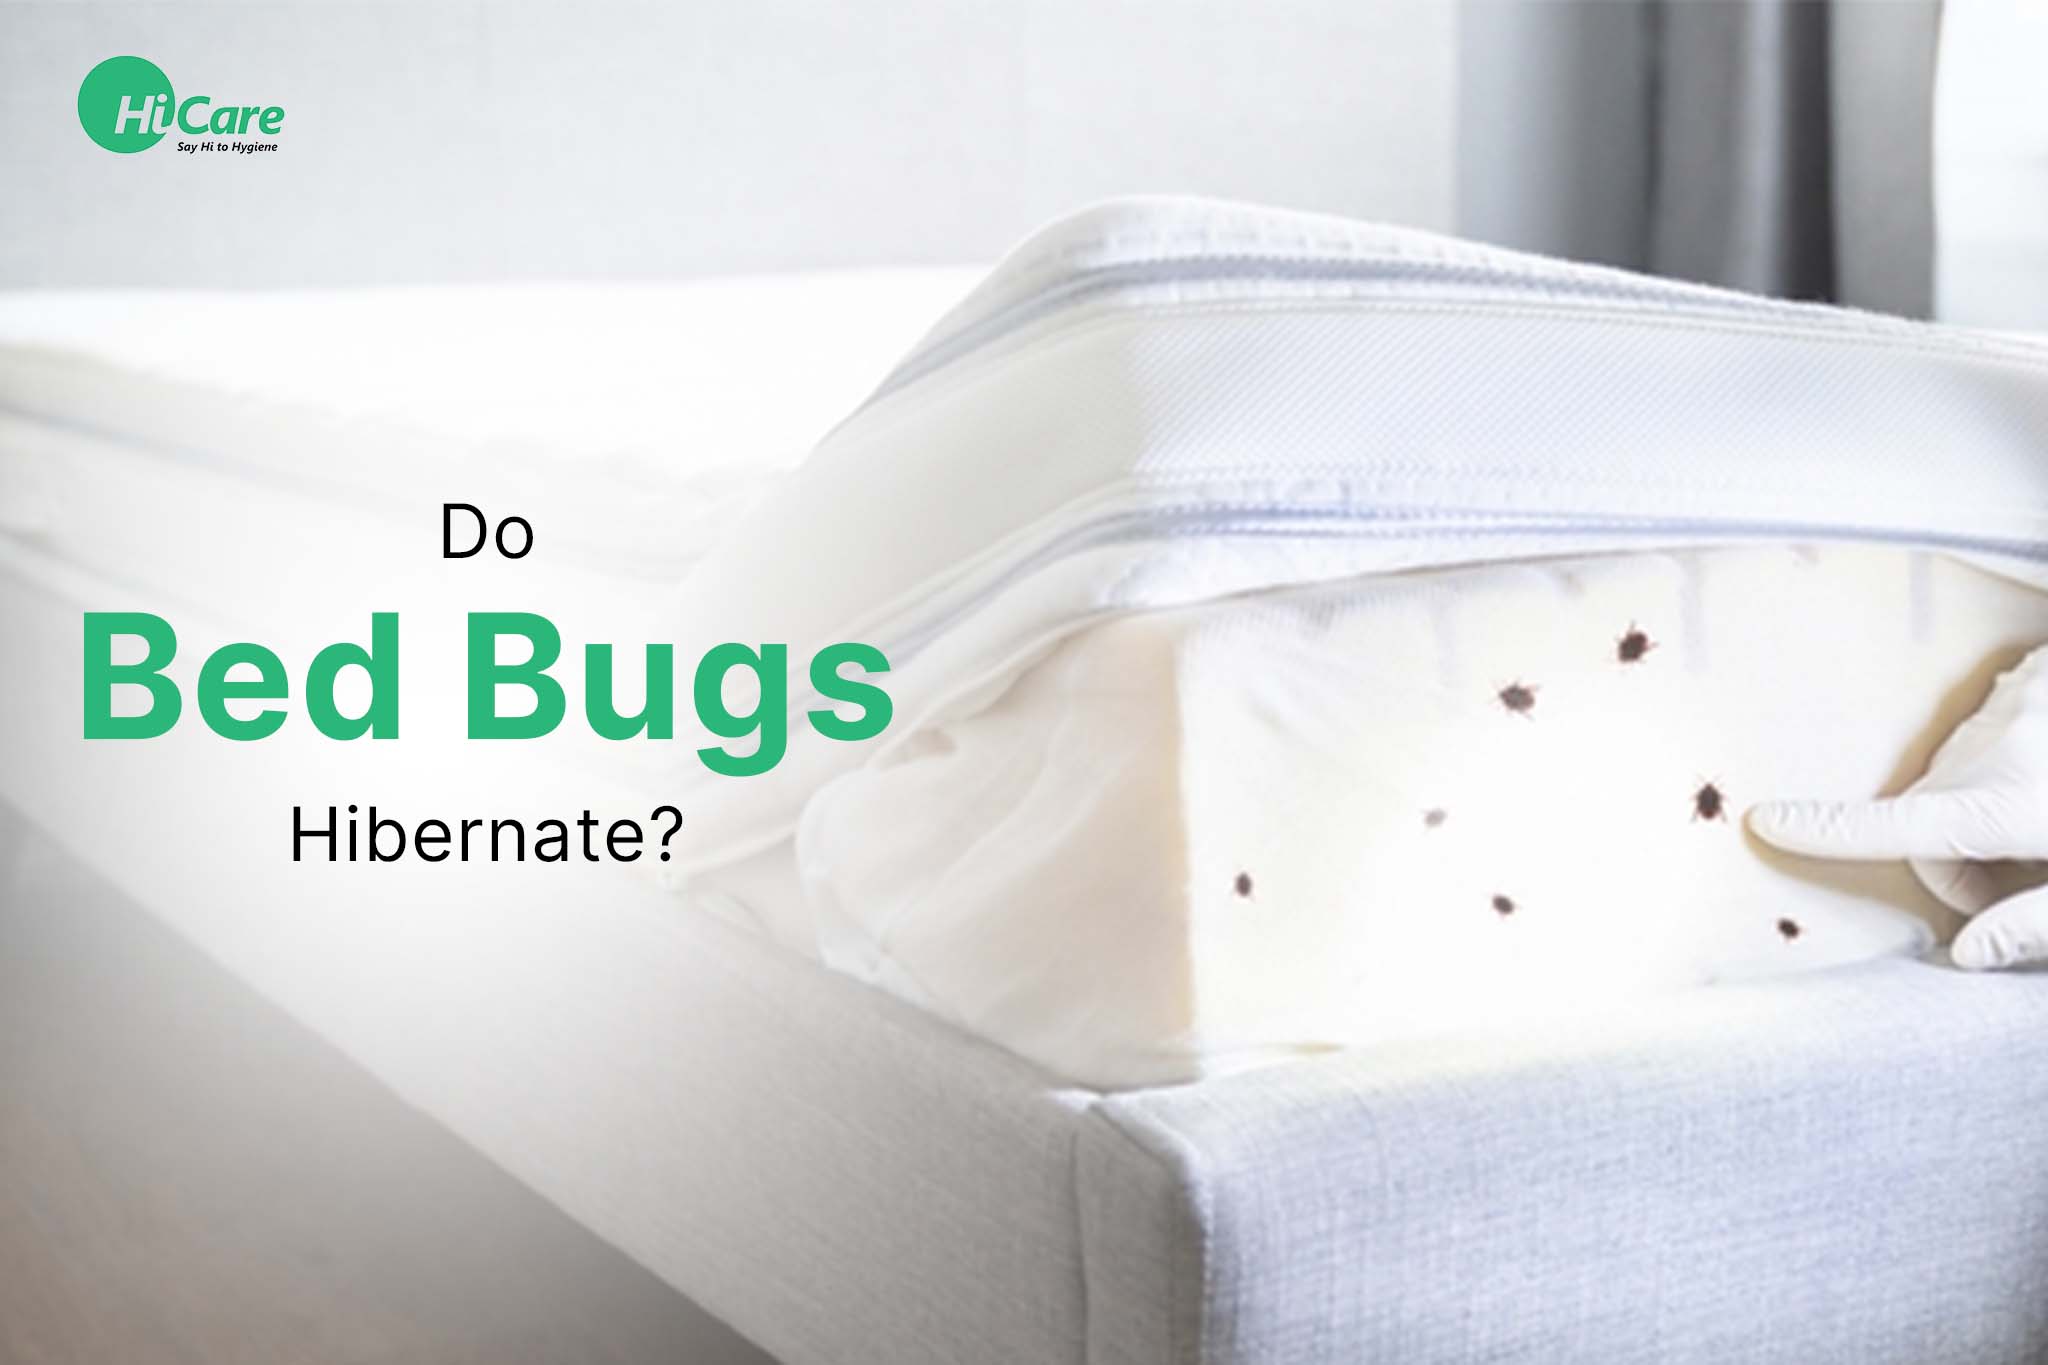 Do Bed Bugs Hibernate?